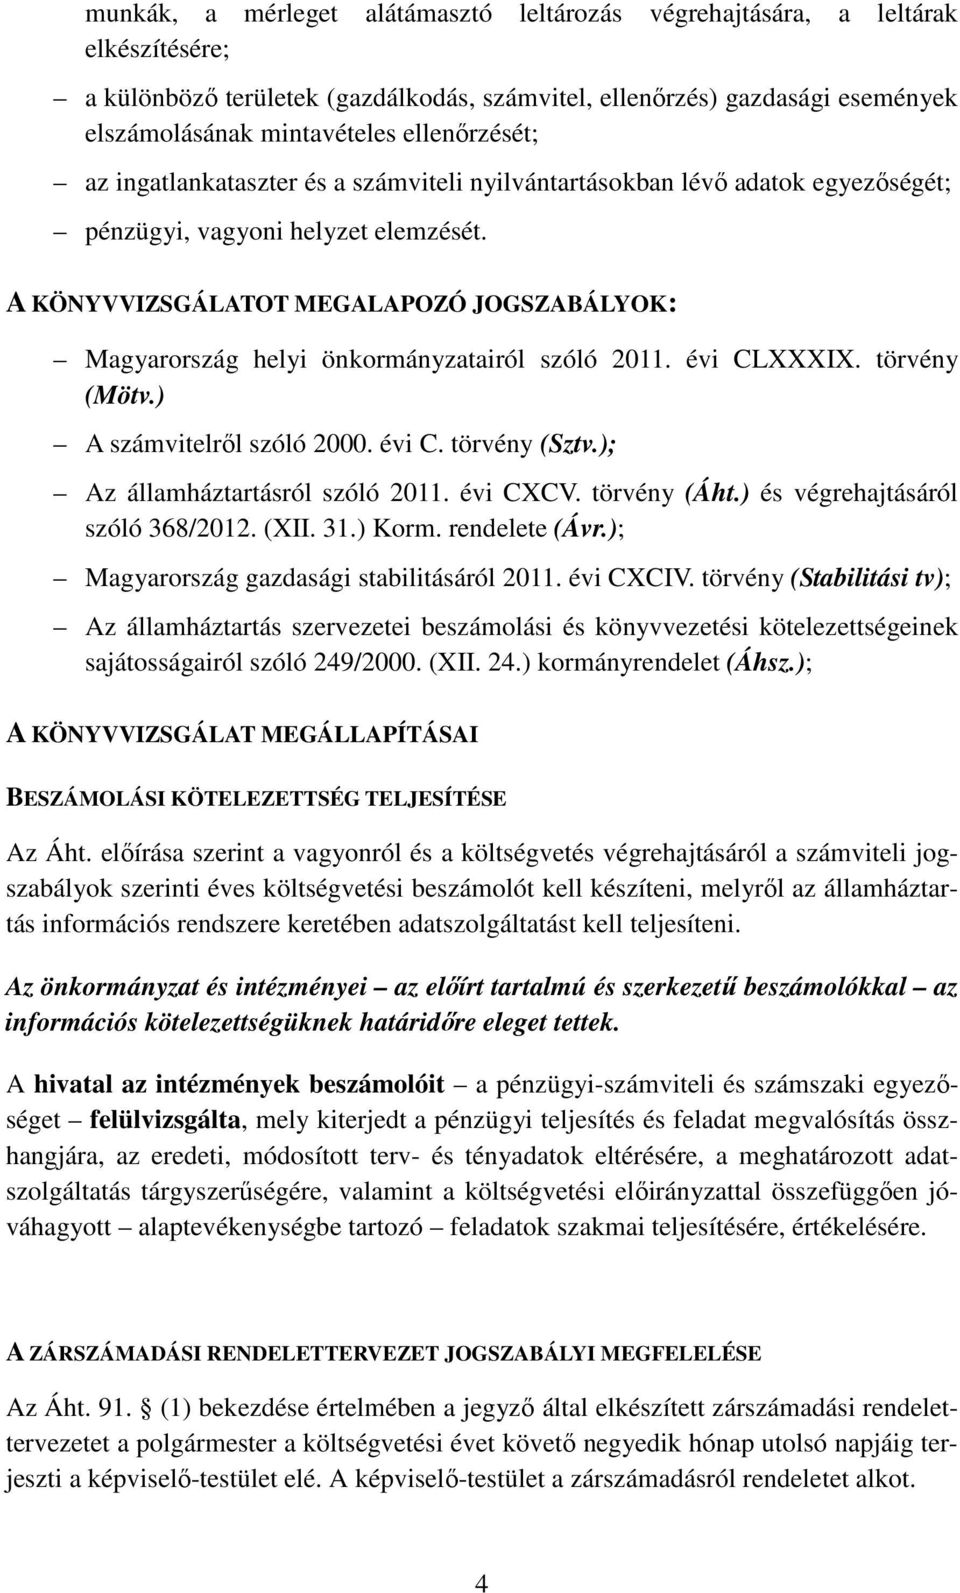 A KÖNYVVIZSGÁLATOT MEGALAPOZÓ JOGSZABÁLYOK: Magyarország helyi önkormányzatairól szóló 2011. évi CLXXXIX. törvény (Mötv.) A számvitelről szóló 2000. évi C. törvény (Sztv.